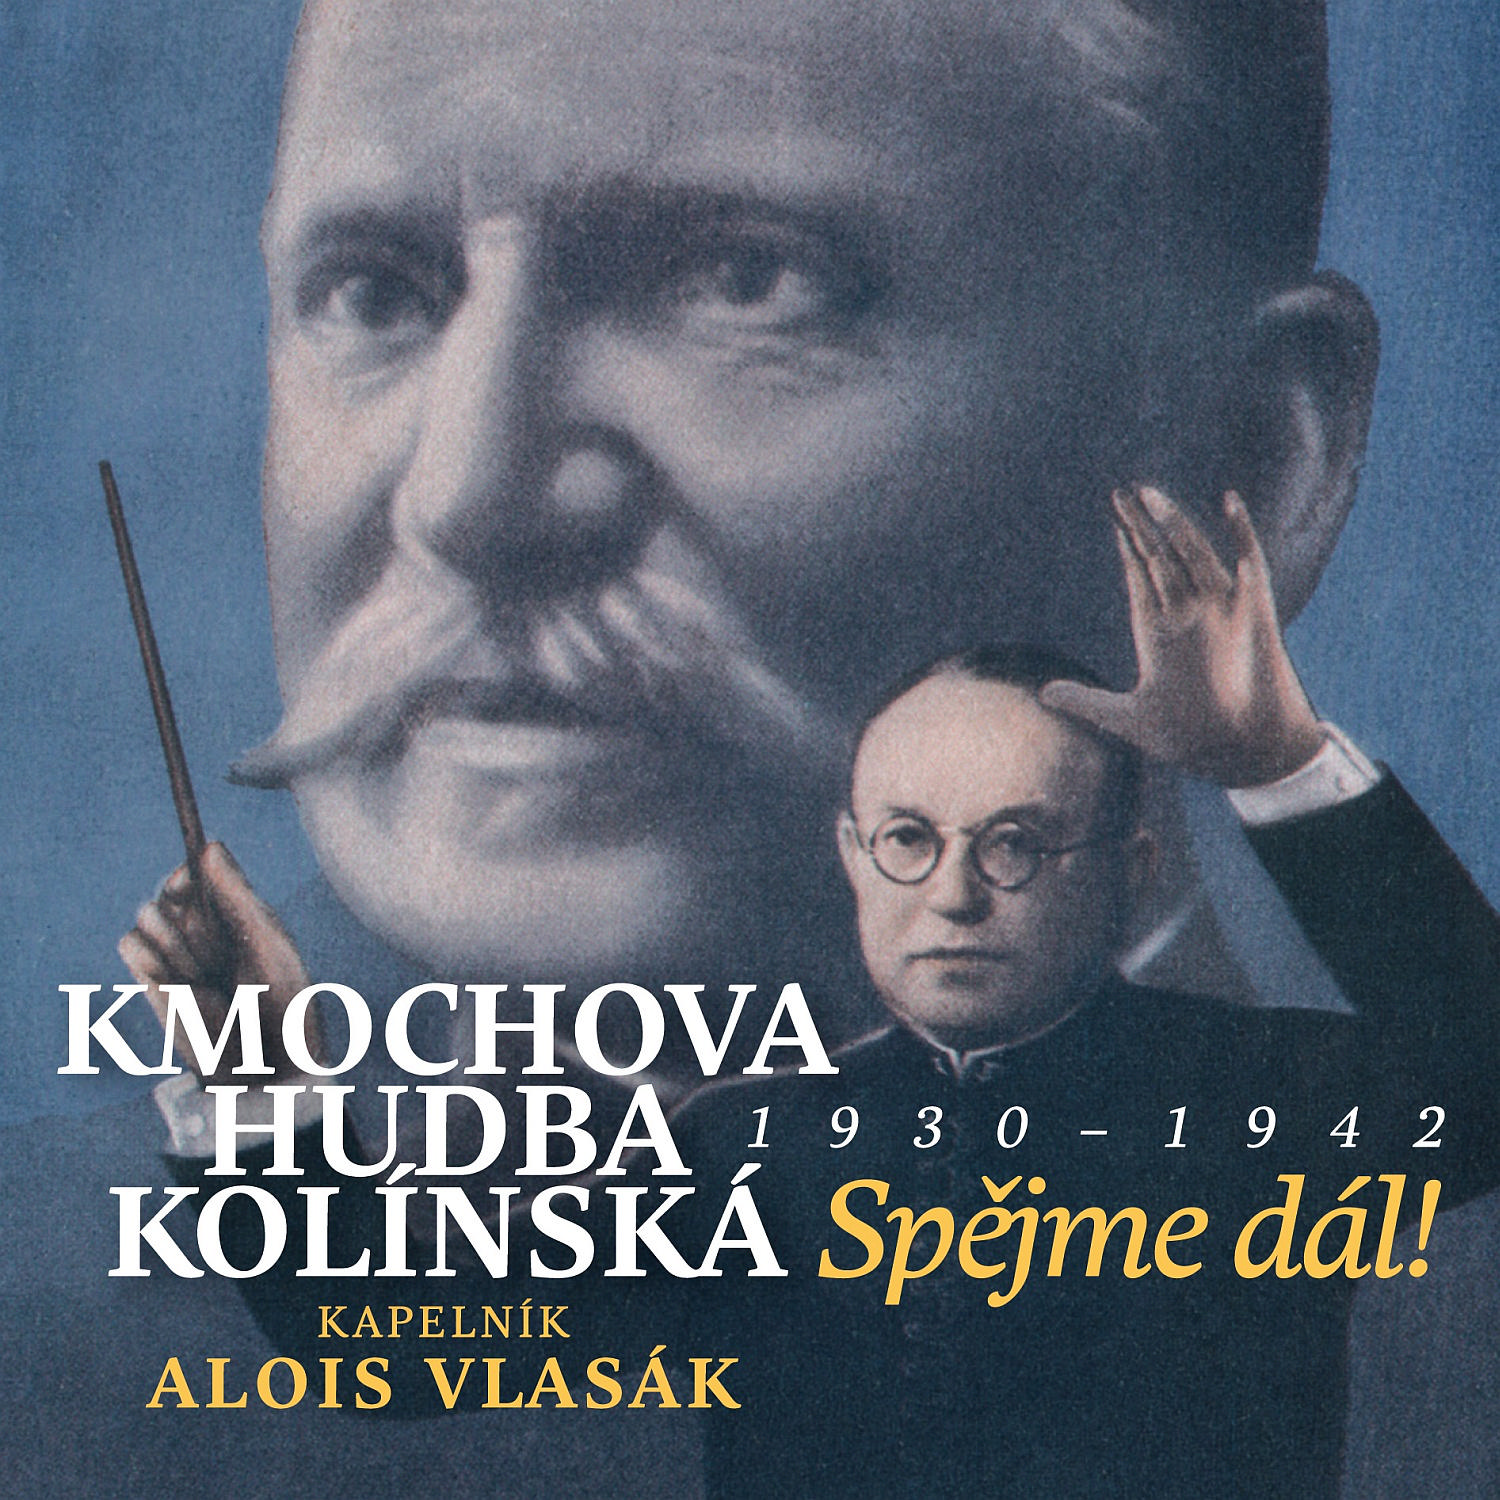 CD Shop - KMOCHOVA HUDBA KOLINSKA/ALOIS VLASAK SPEJME DAL! 1930 - 1942